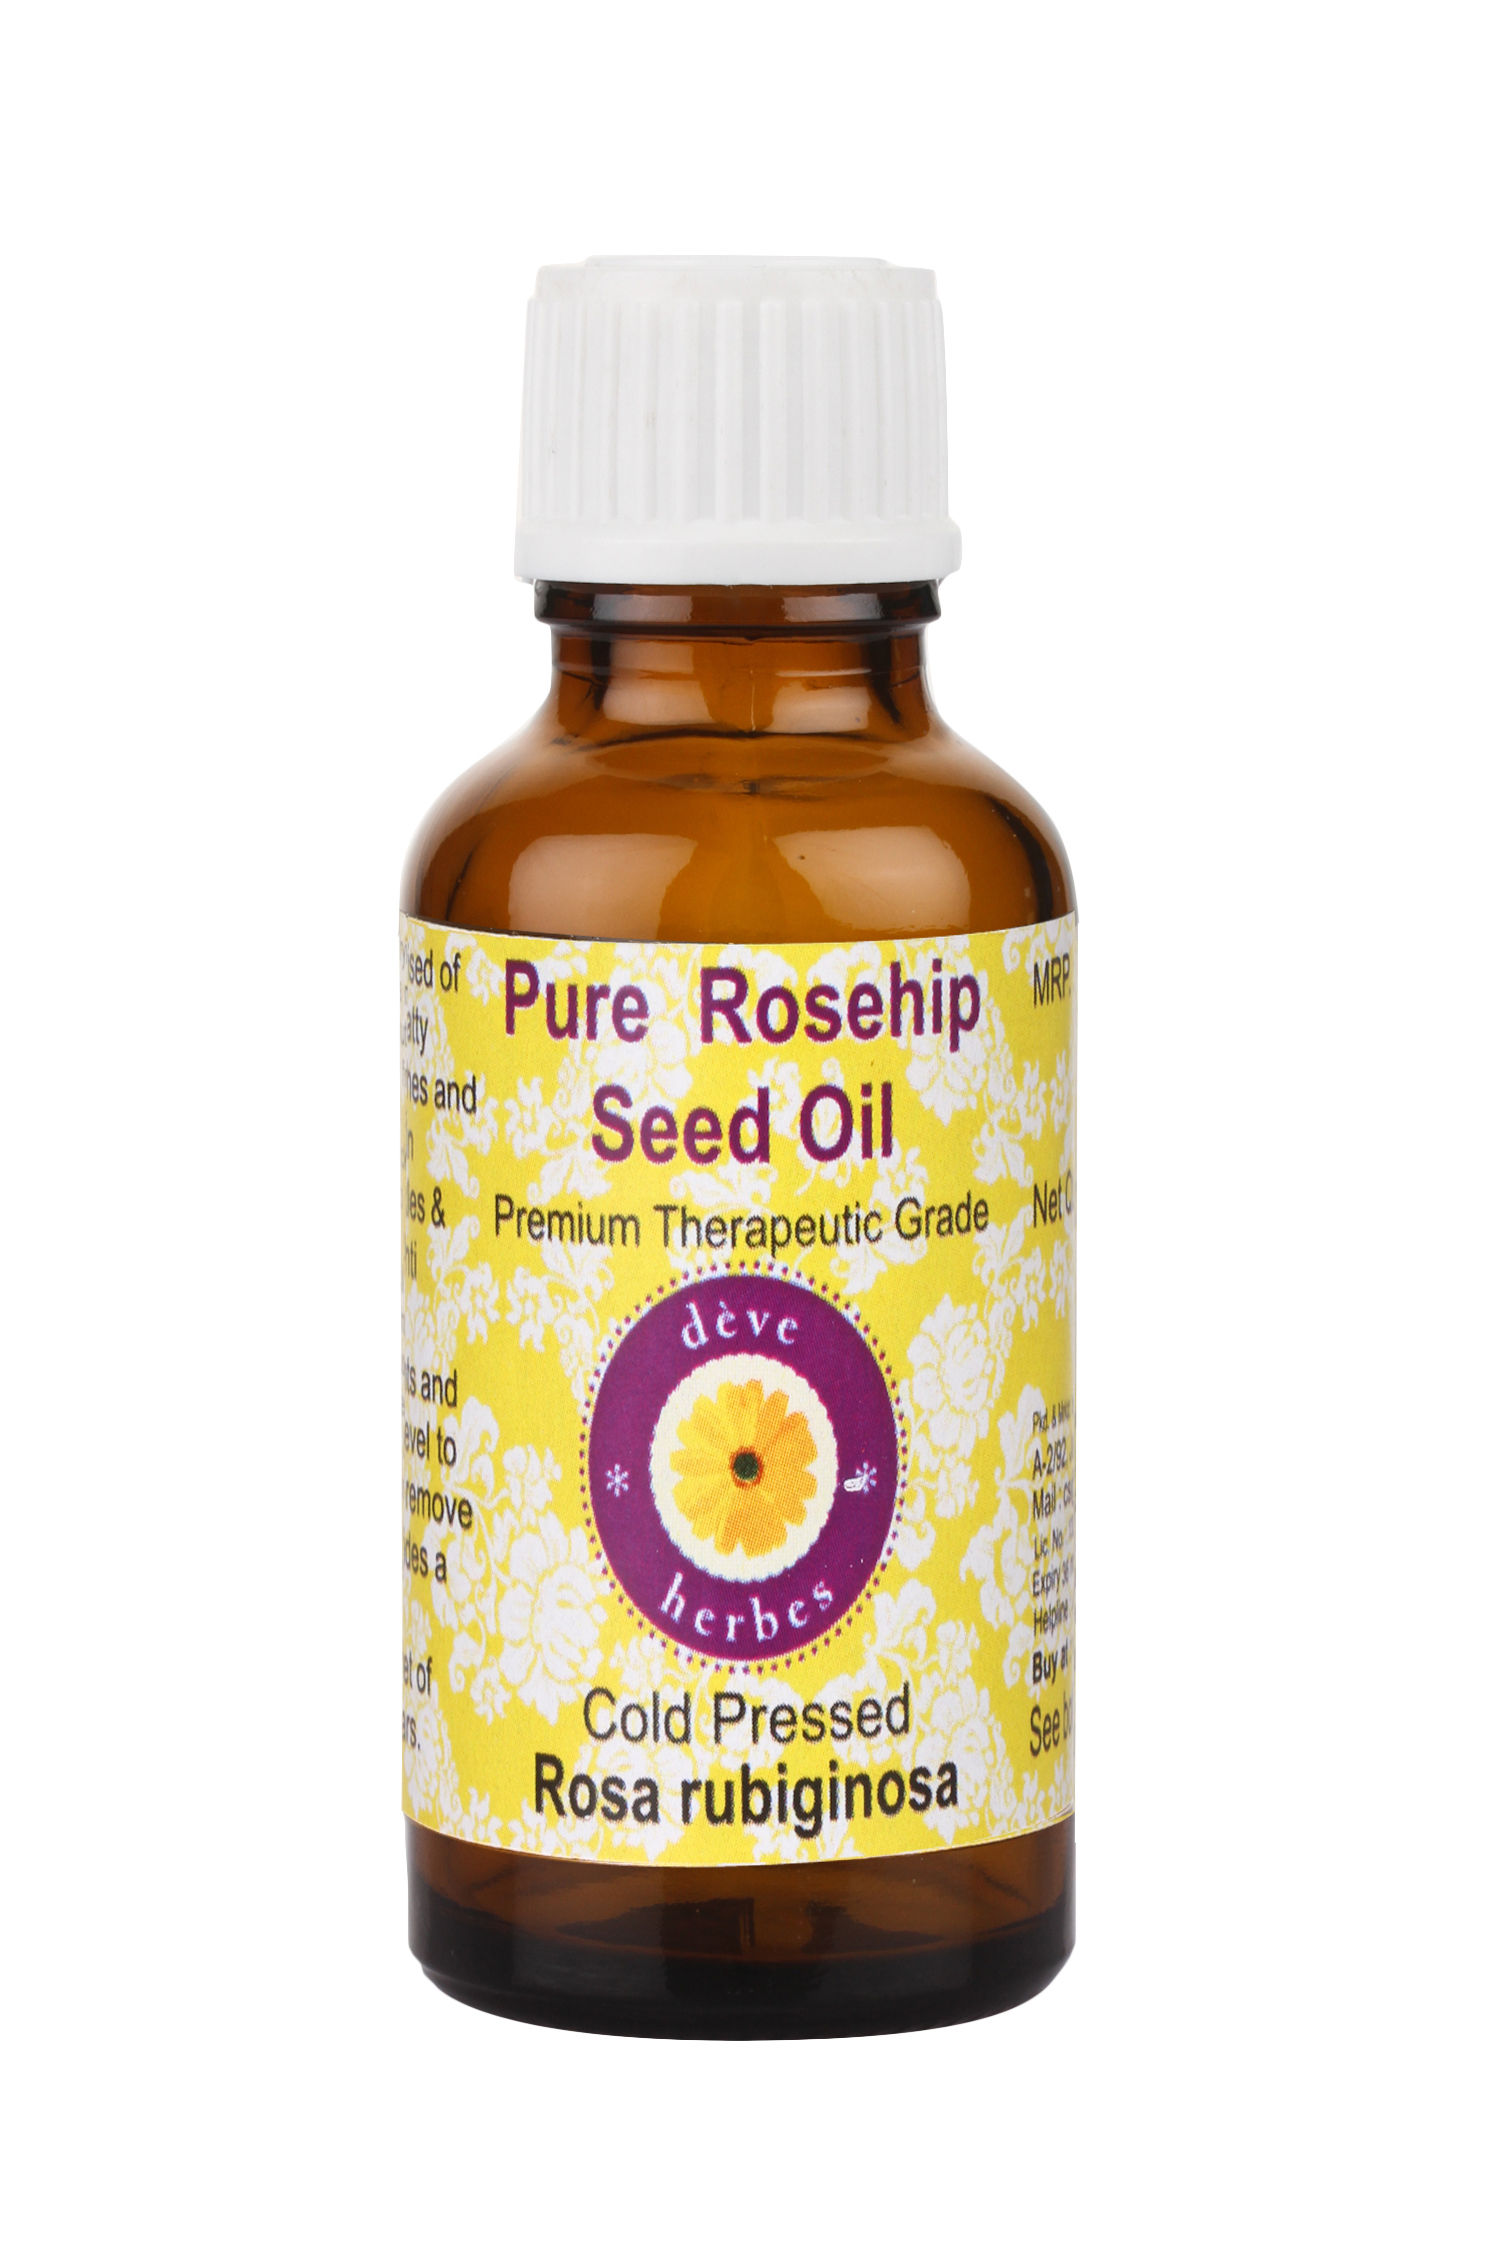 Deve Herbes Pure Rosehip Seed Oil